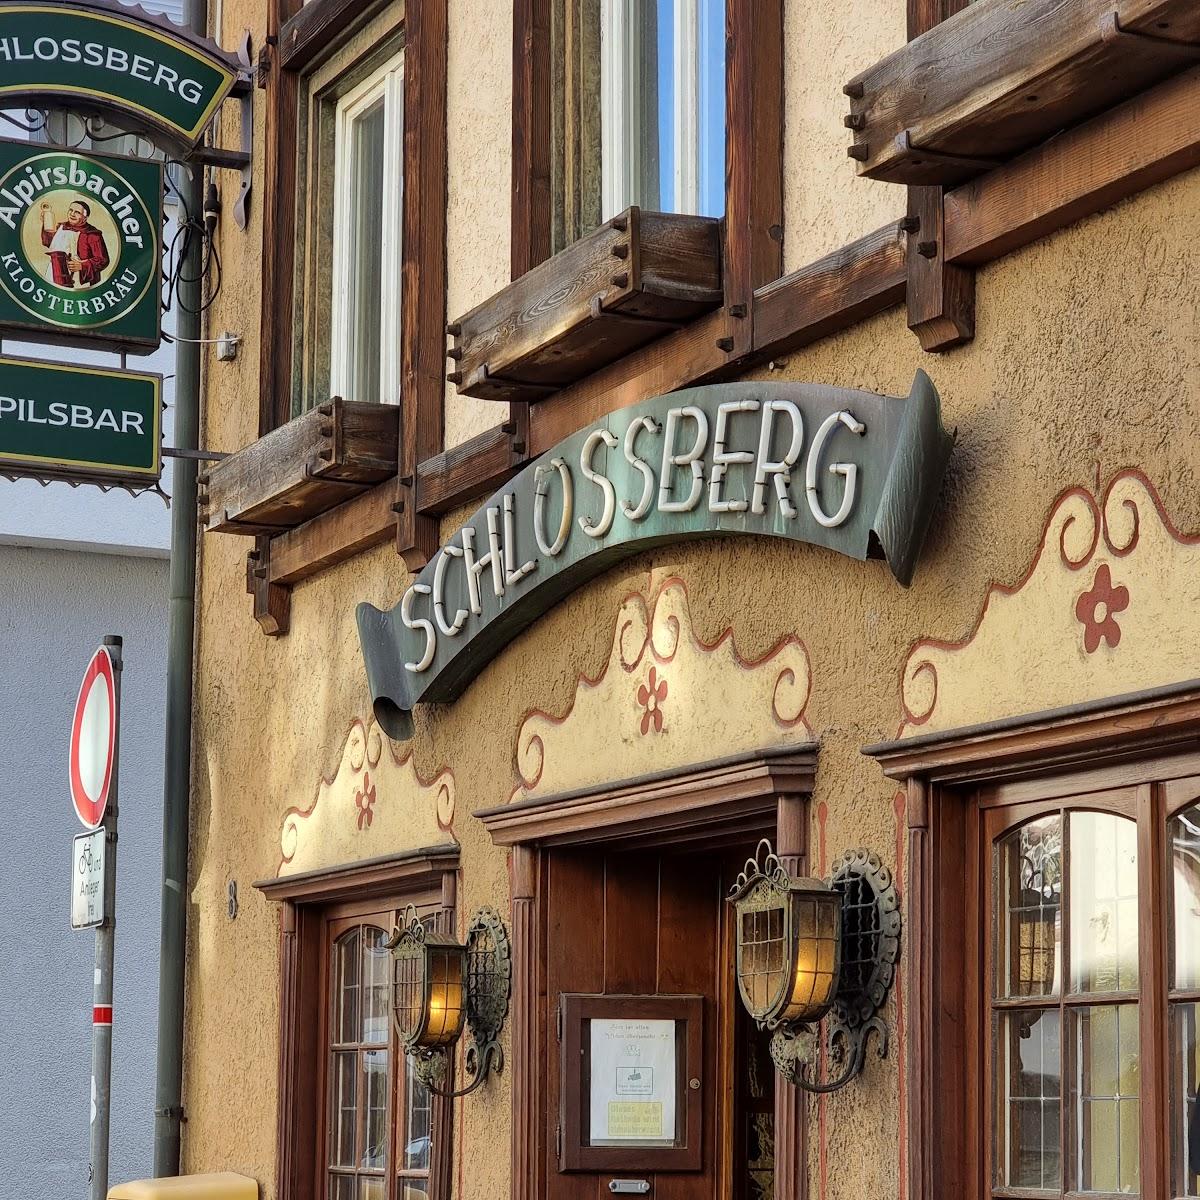 Restaurant "Gasthaus Schloßberg" in Schramberg